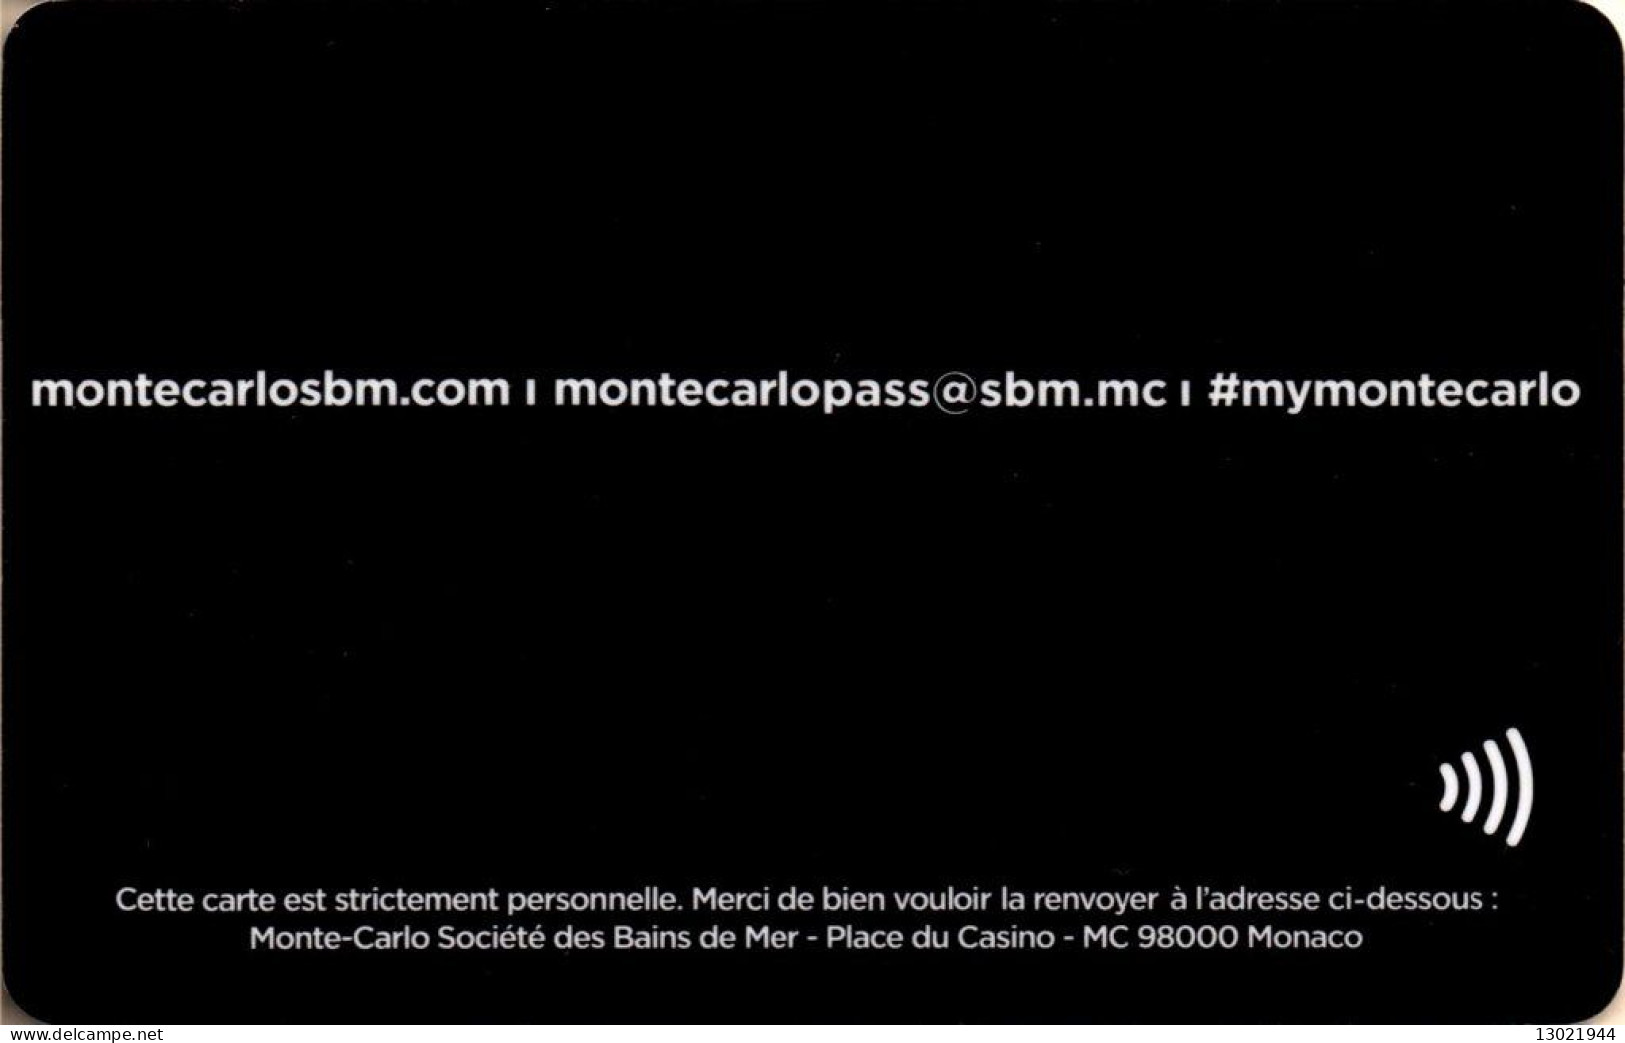 PRINCIPATO DI MONACO  KEY HOTEL    Monte-Carlo Pass - Hotel Keycards